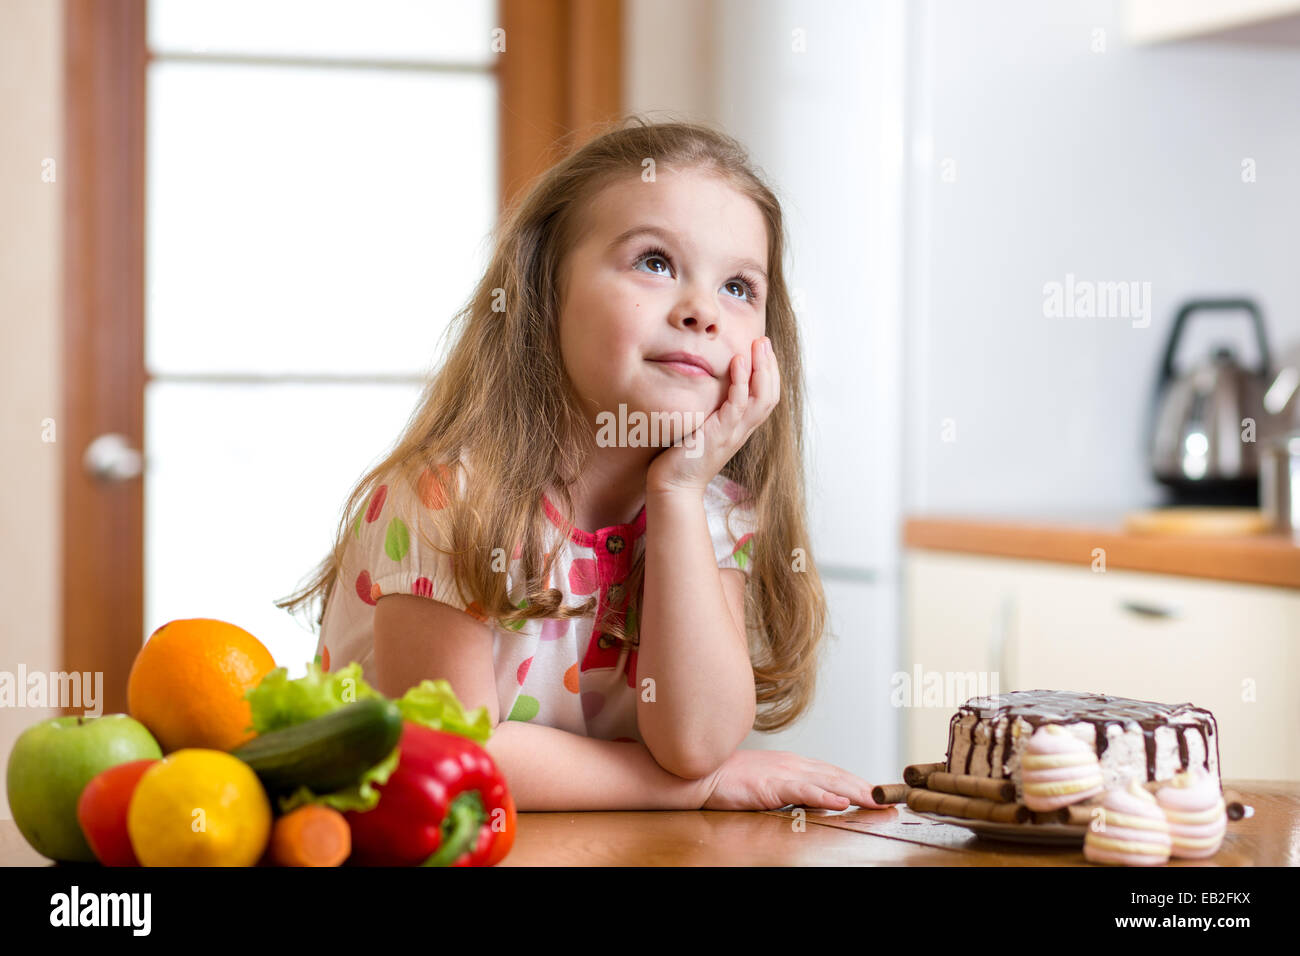 kid choosing between healthy vegetables and tasty sweets Stock Photo